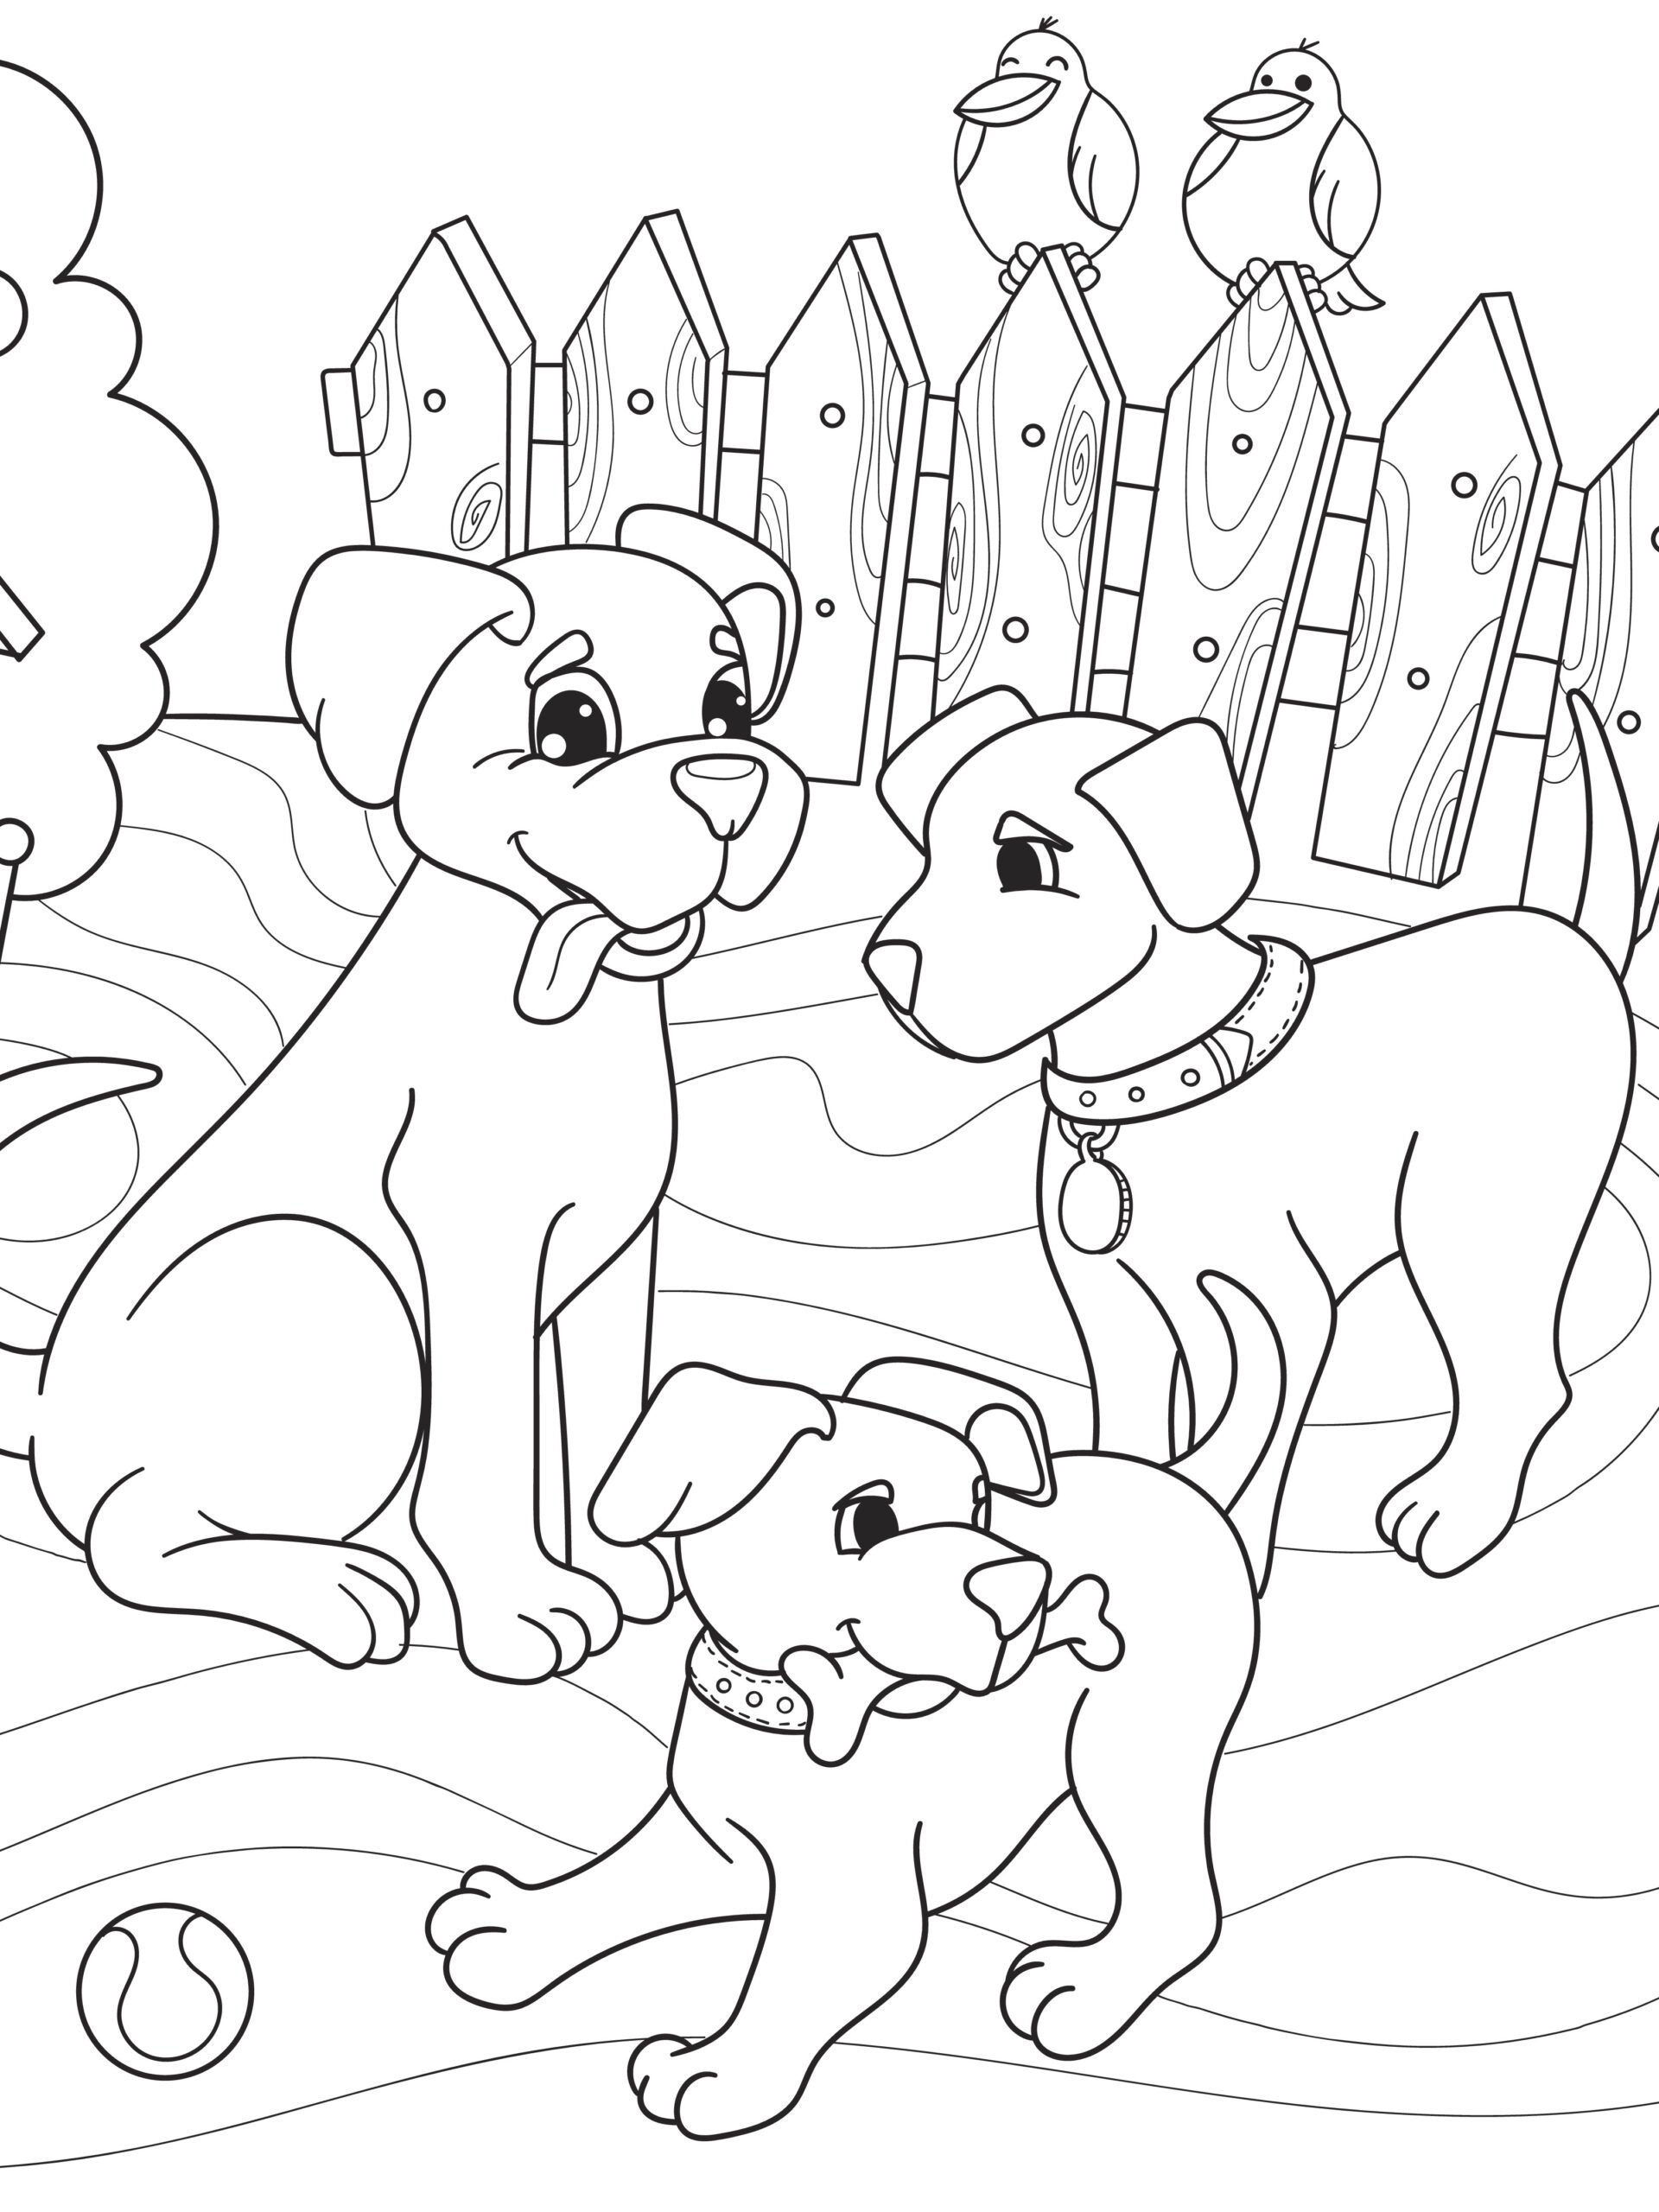 Раскраска семья виляющих собак